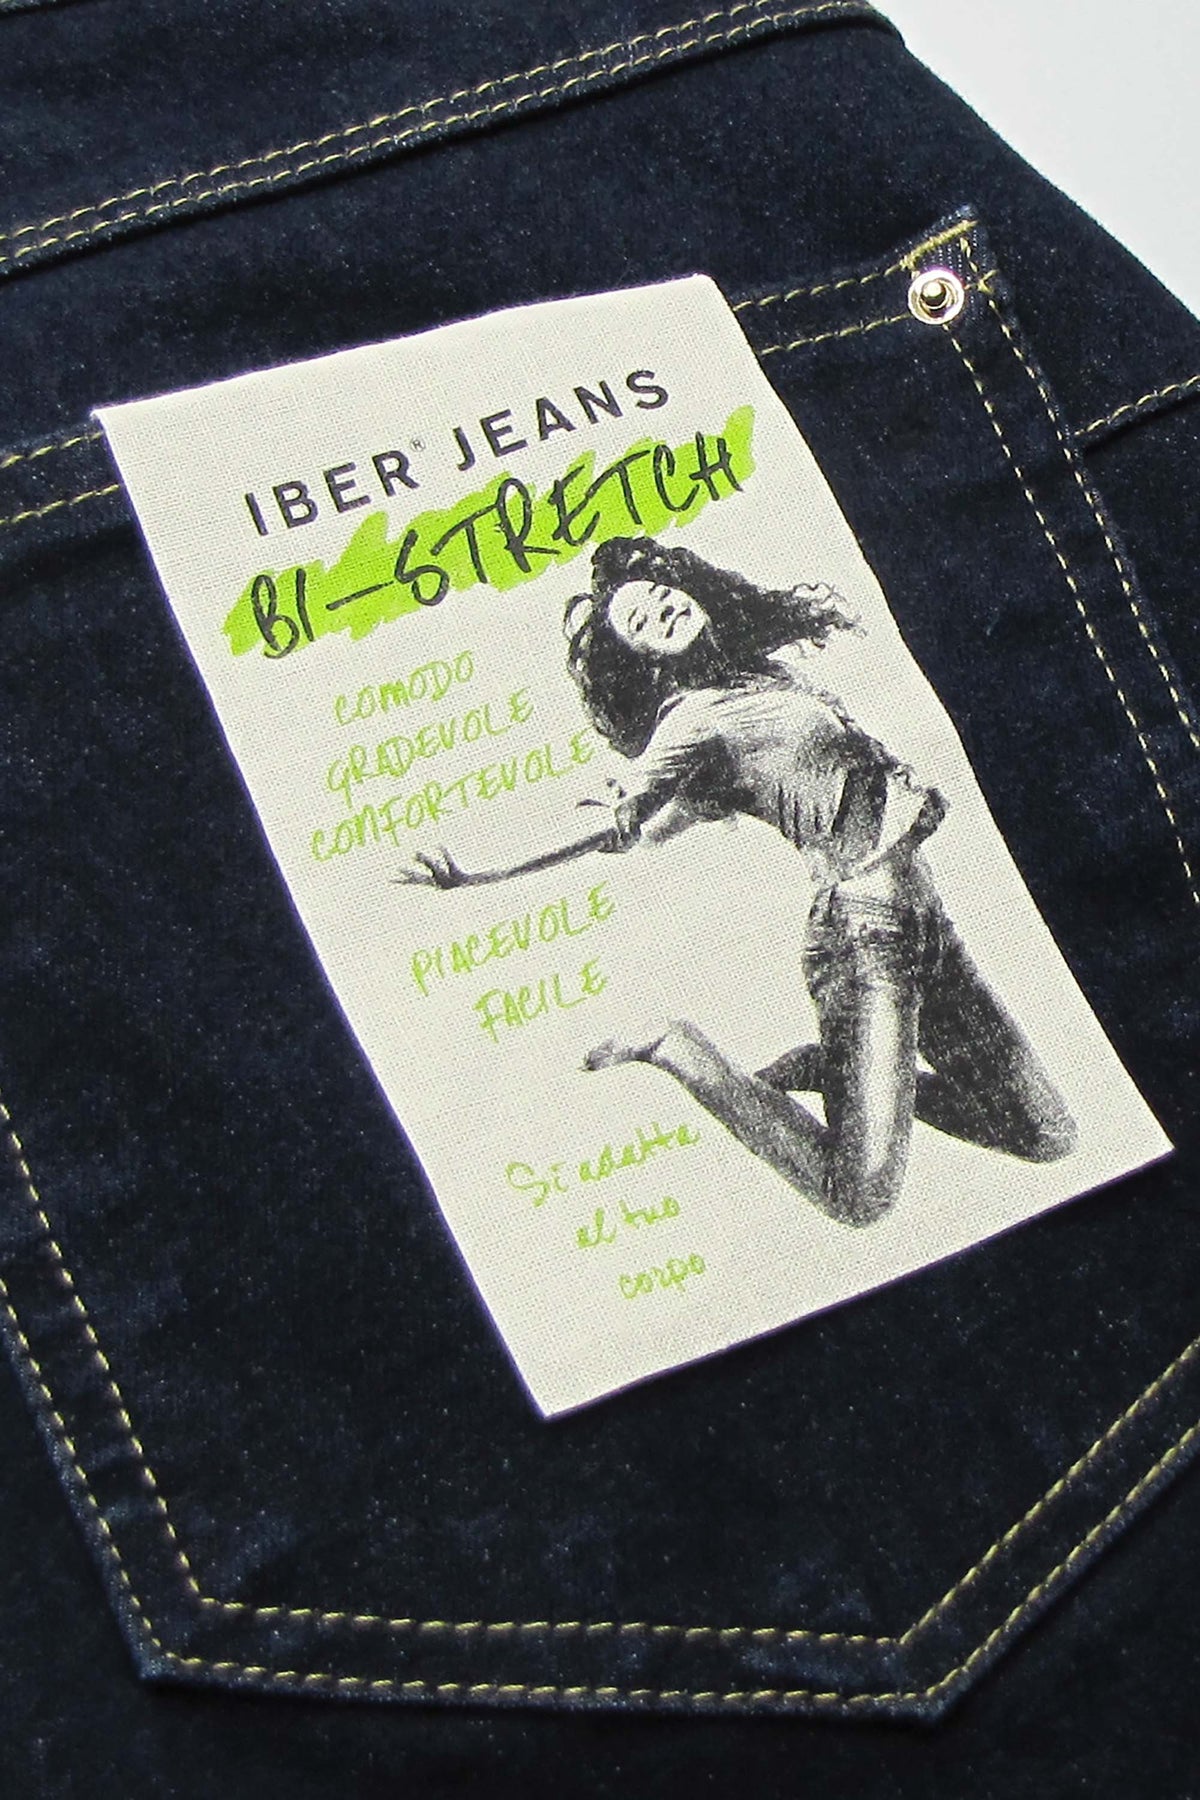 Missy Bj01 Jeans di cotone bi-stretch con ciondolo oro